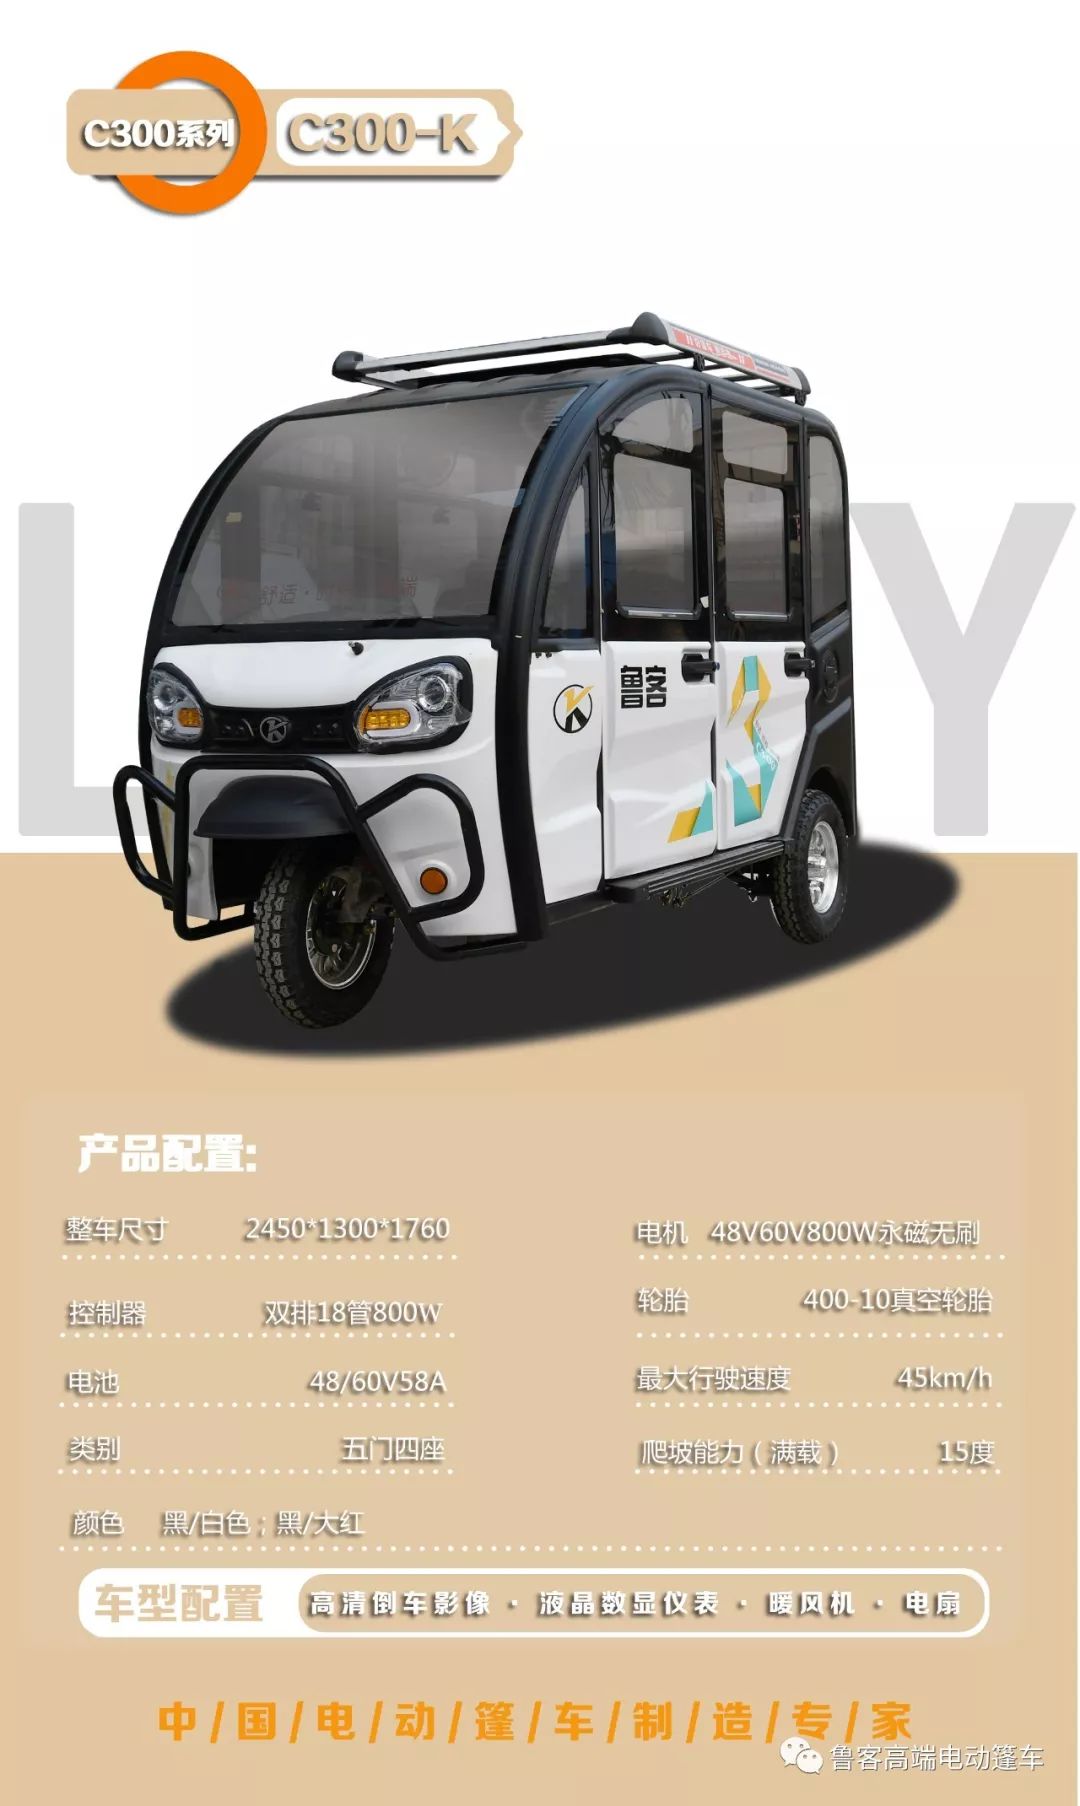 鲁客电动三轮篷车产品介绍2020年3月